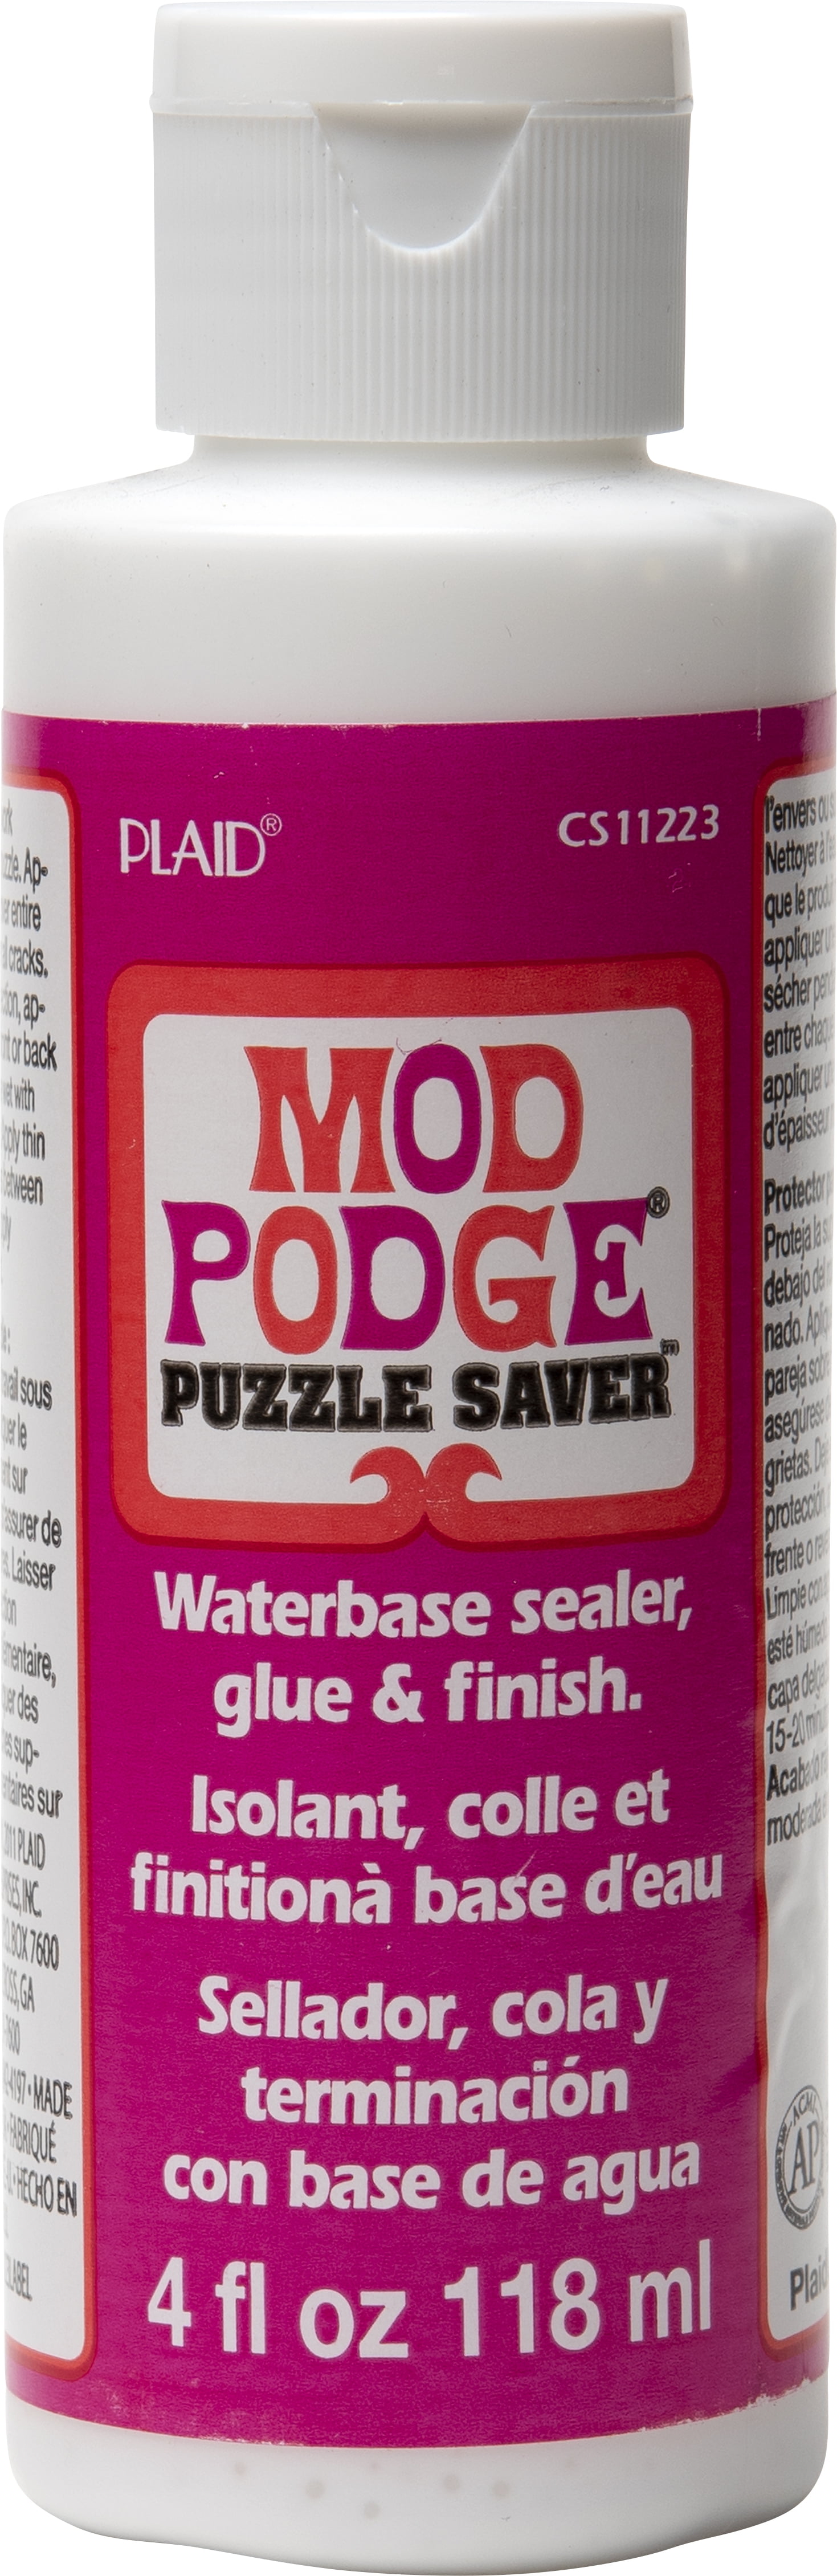 Mod Podge Puzzle Saver - 4 fl oz bottle